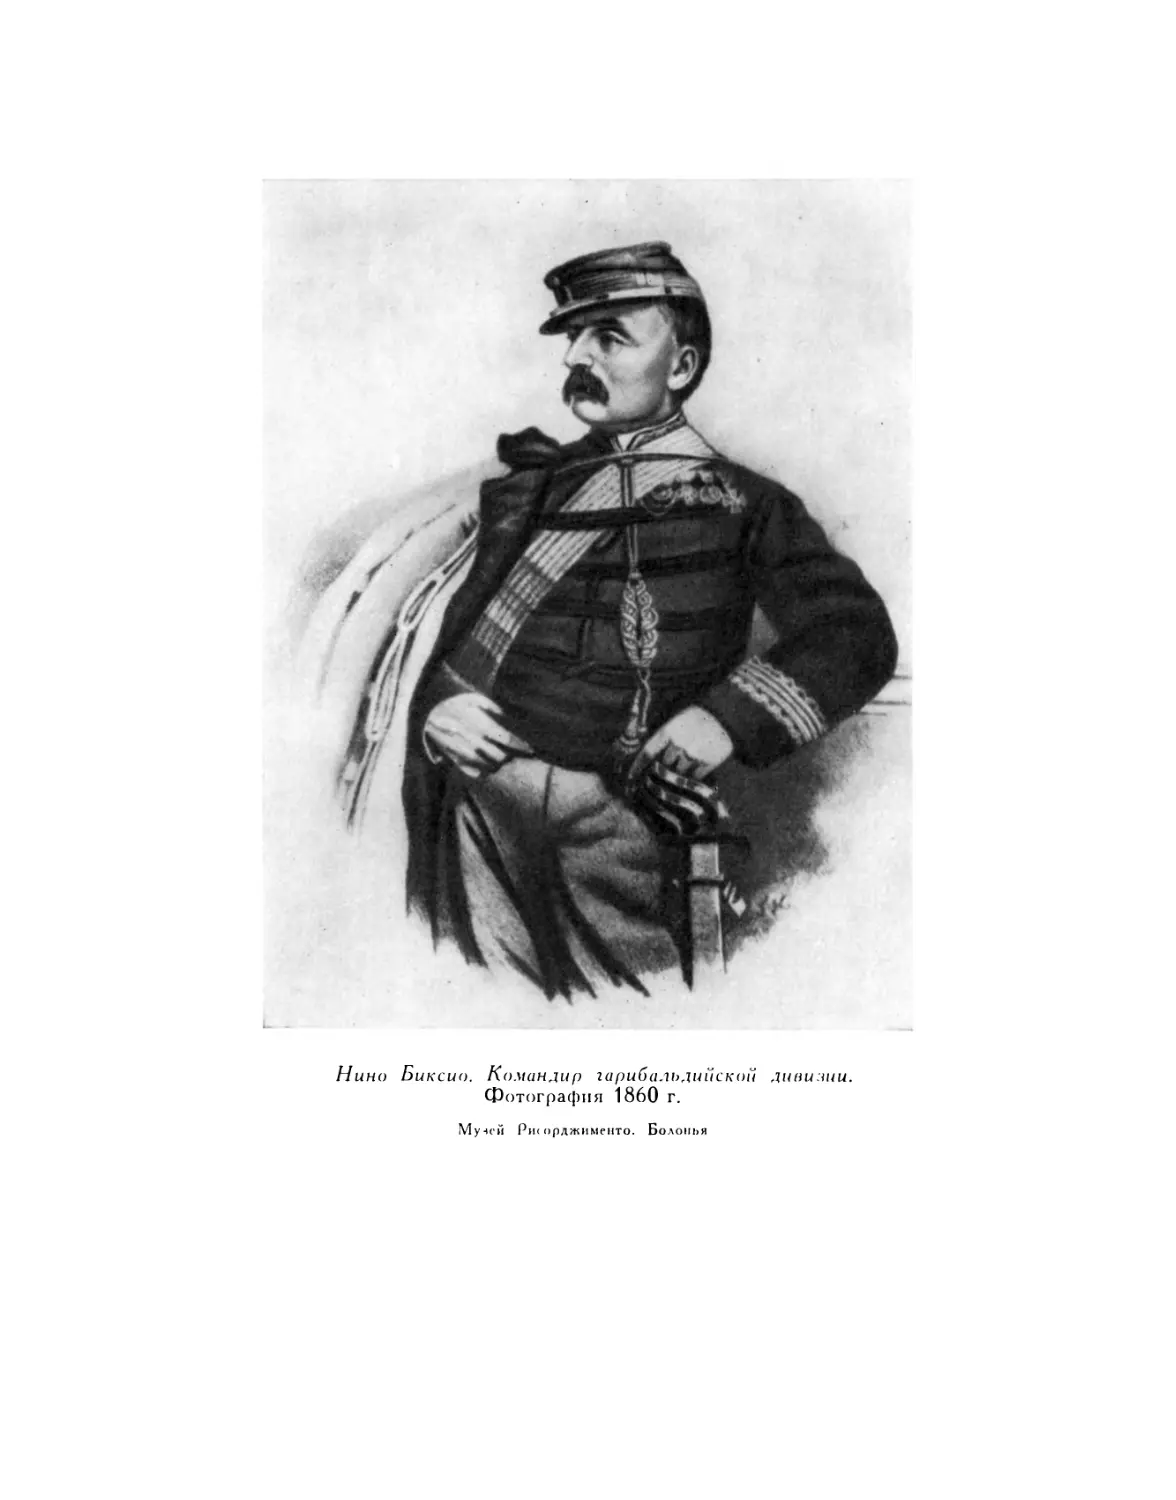 Вклейка. Нино Биксио. Командир гарибальдийской дивизии. Фотография 1860 г.